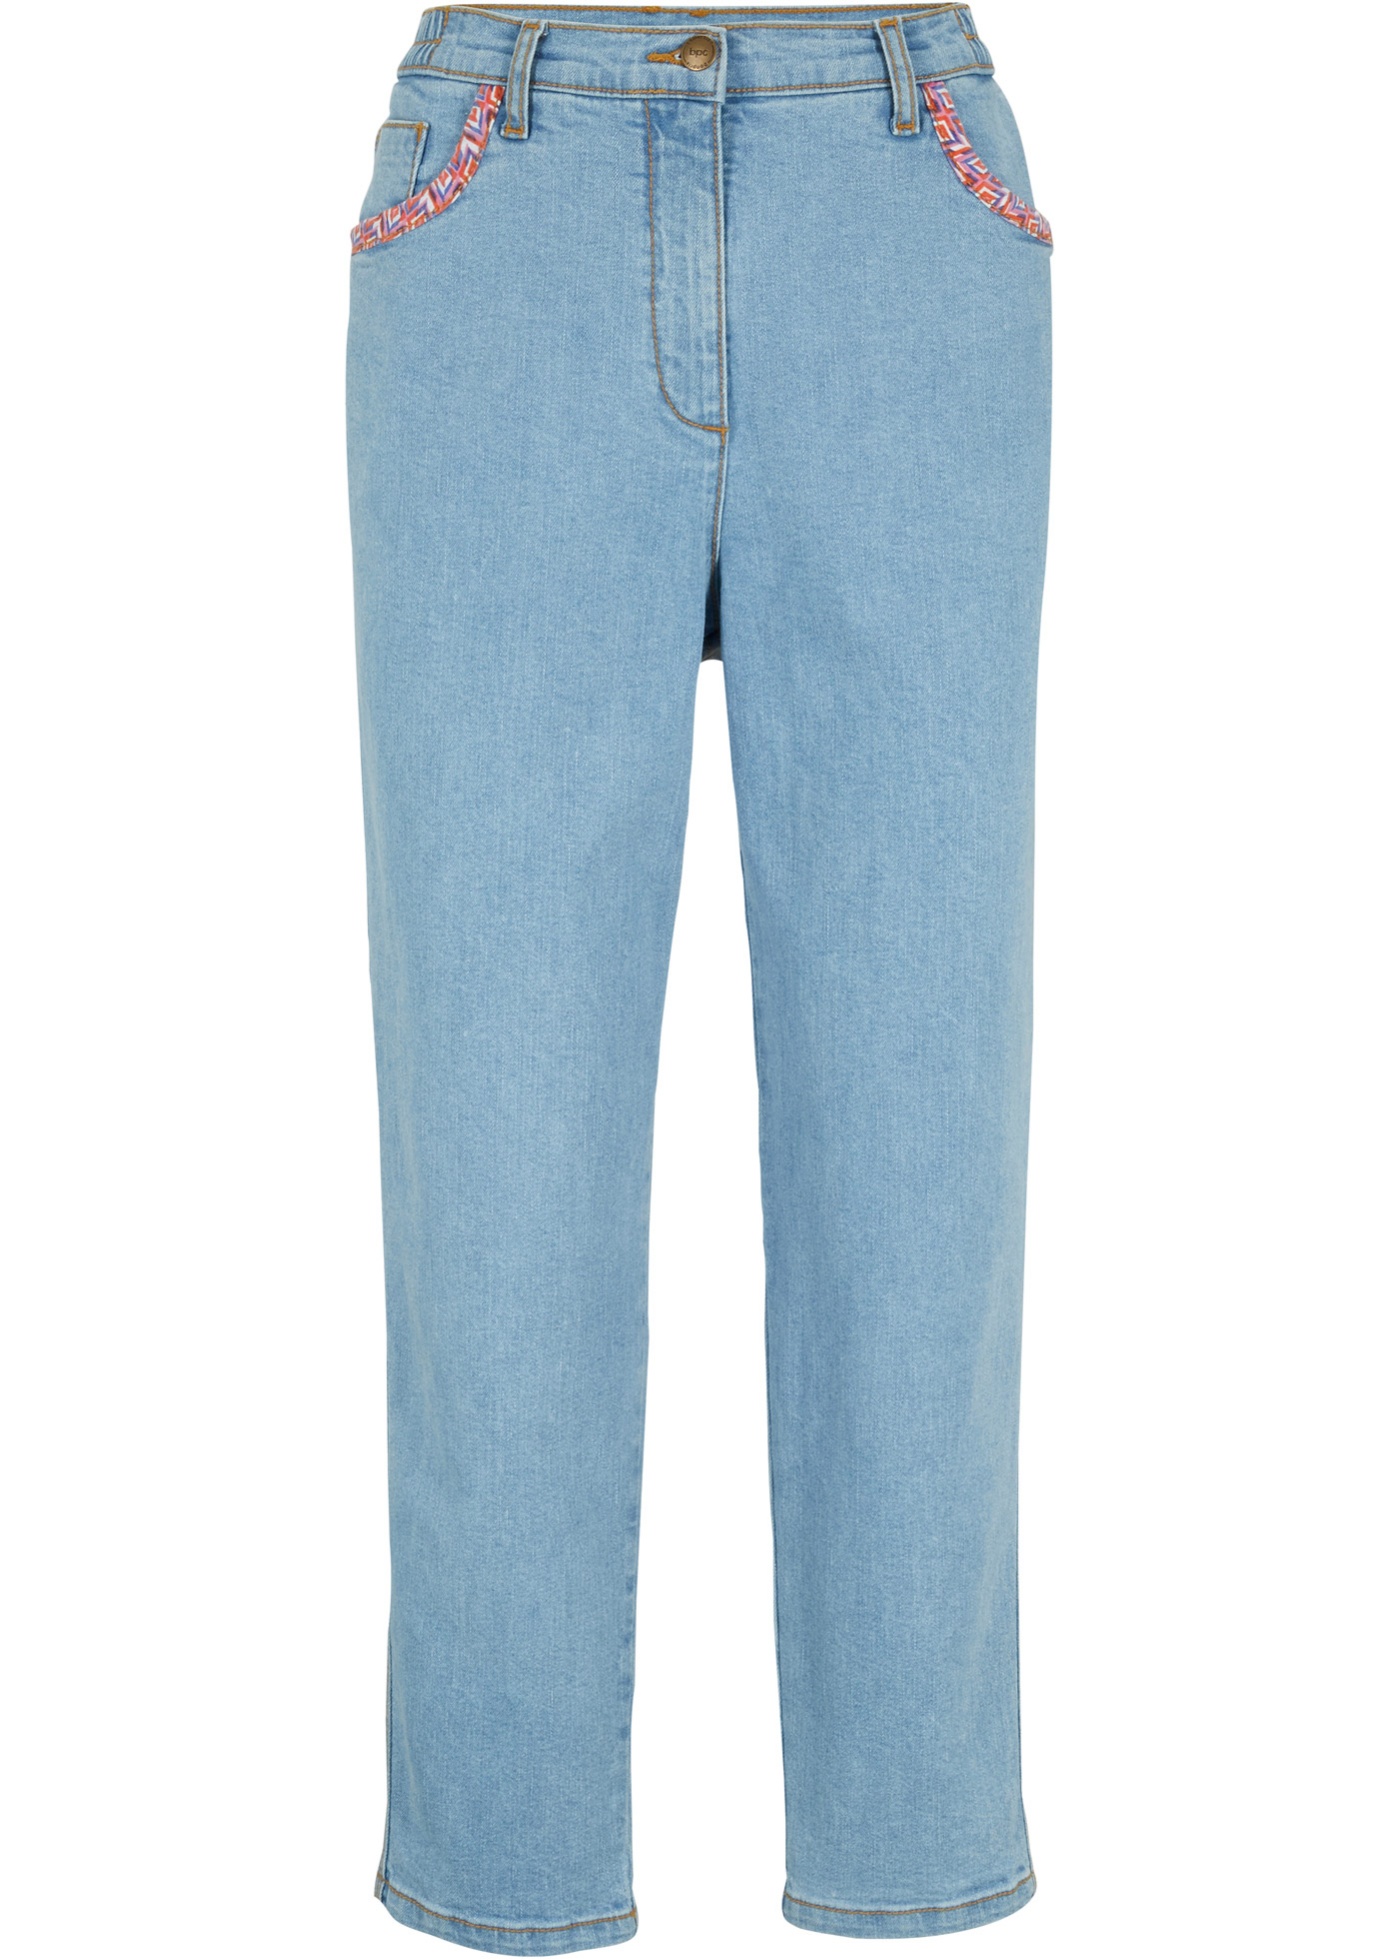 Knöchelfreie High-Waist Stretch-Jeans, lockerer Schnitt mit Bequembund für mehr Komfort (93150695) in hellblau denim